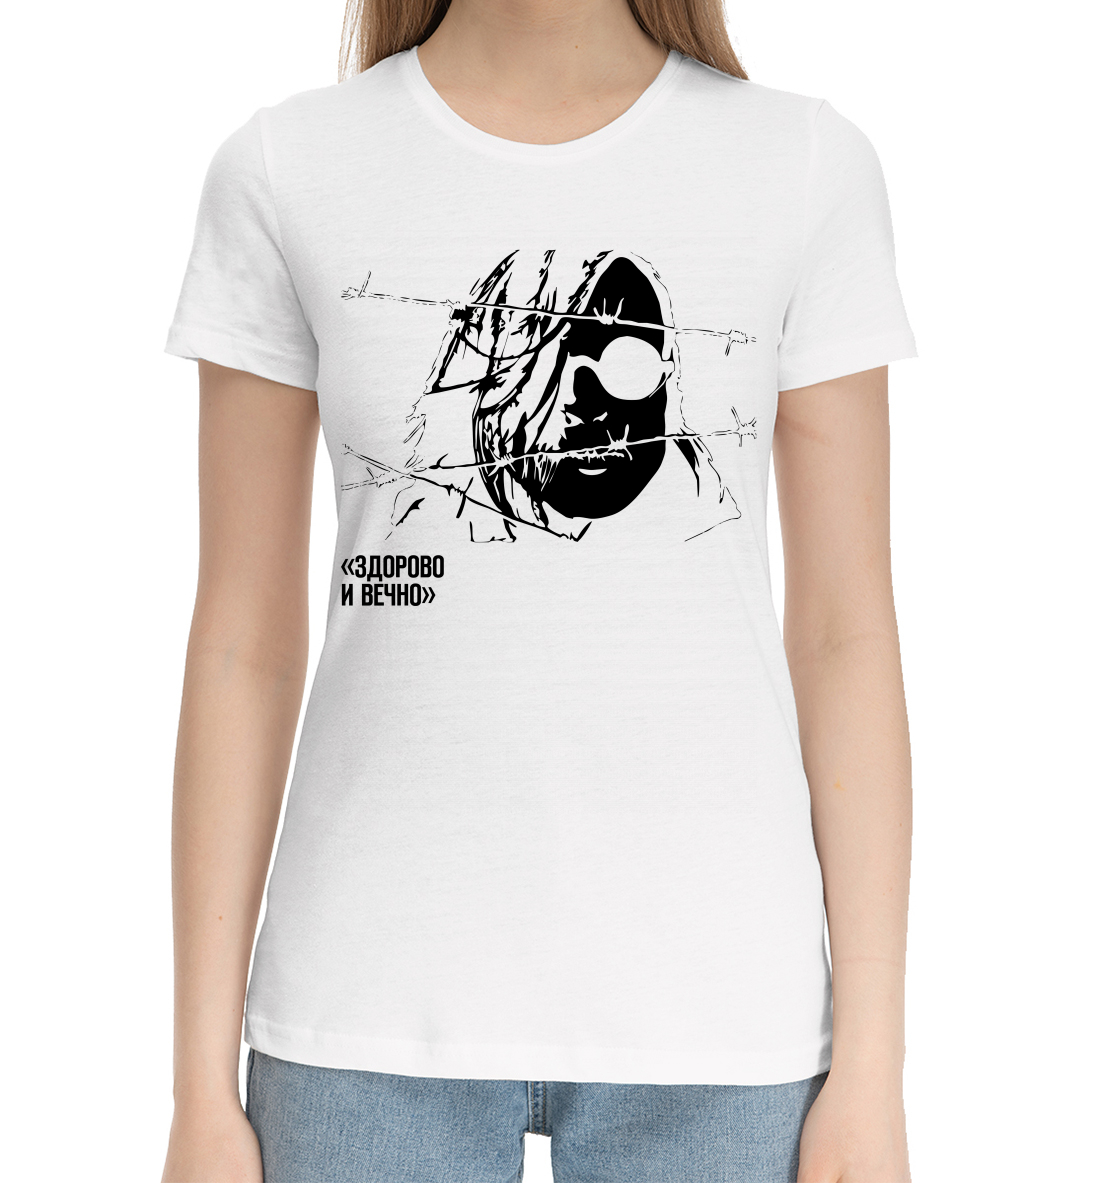 Хлопковая футболка Гражданская Оборона MZK-995643-hfu-1